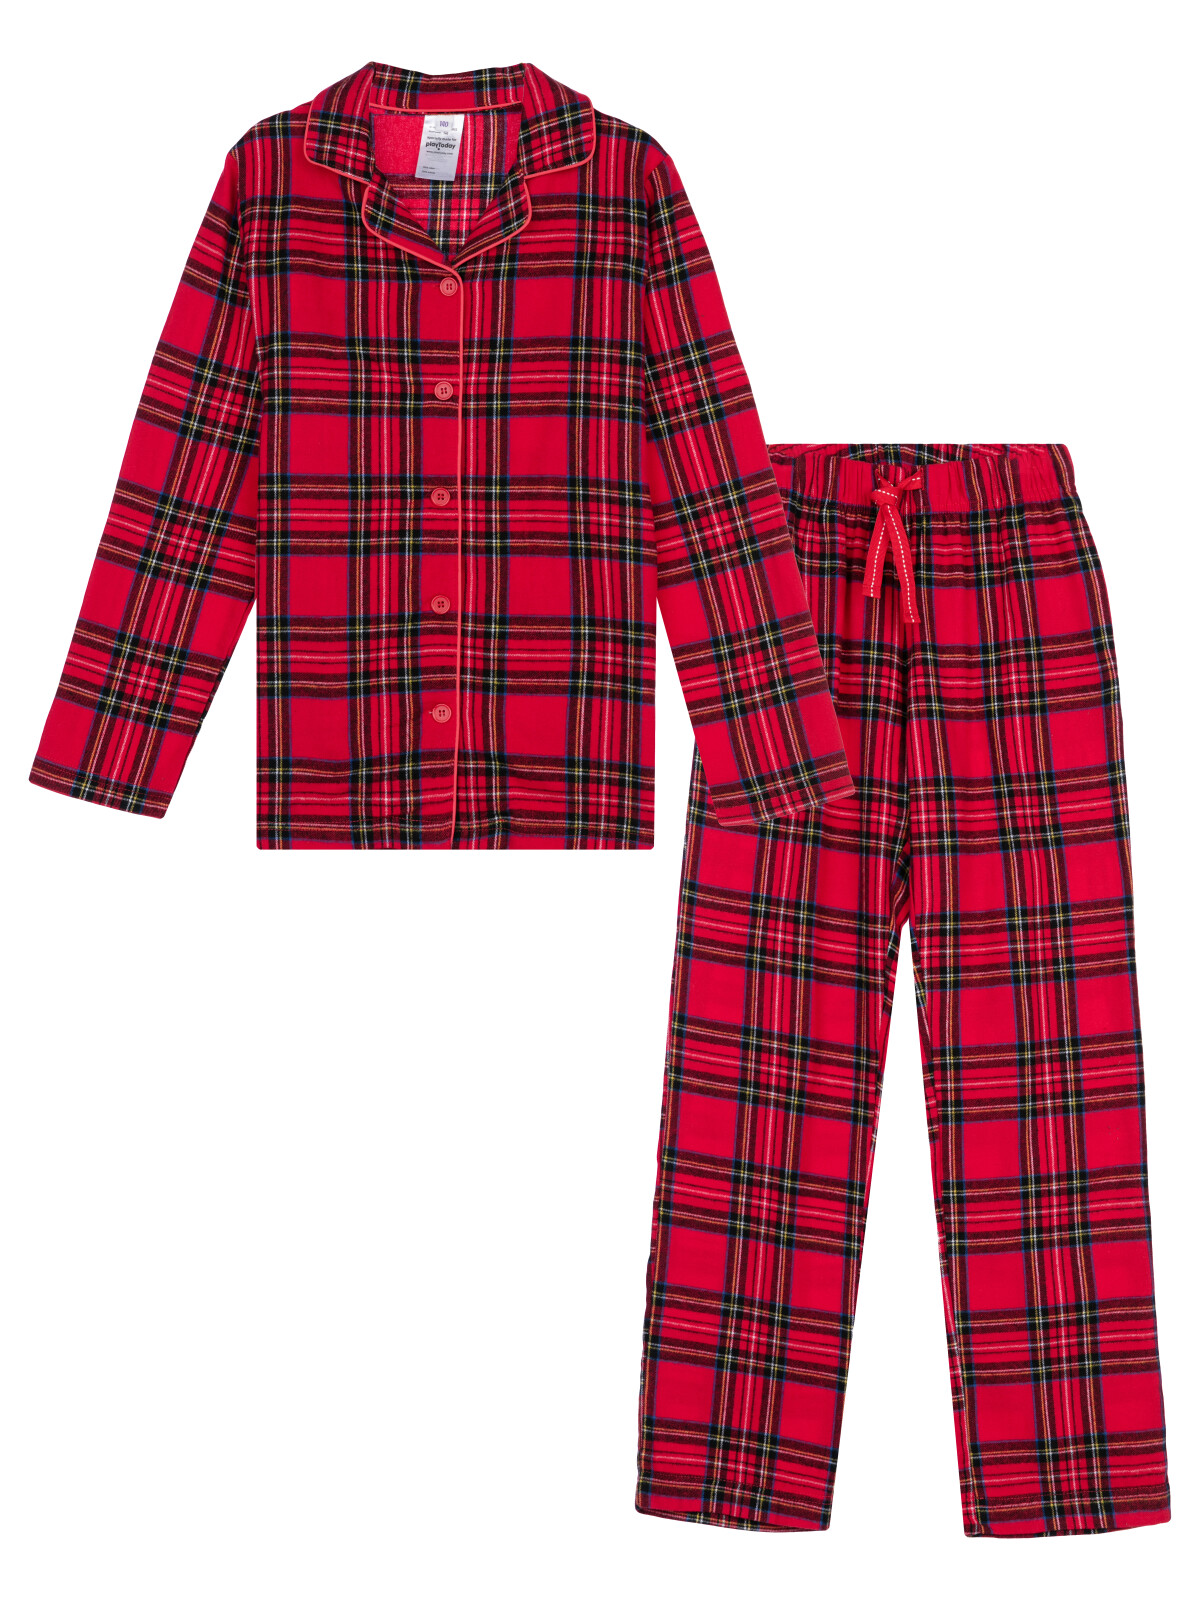 Пижама текстильная для девочек PlayToday, цветной, 152